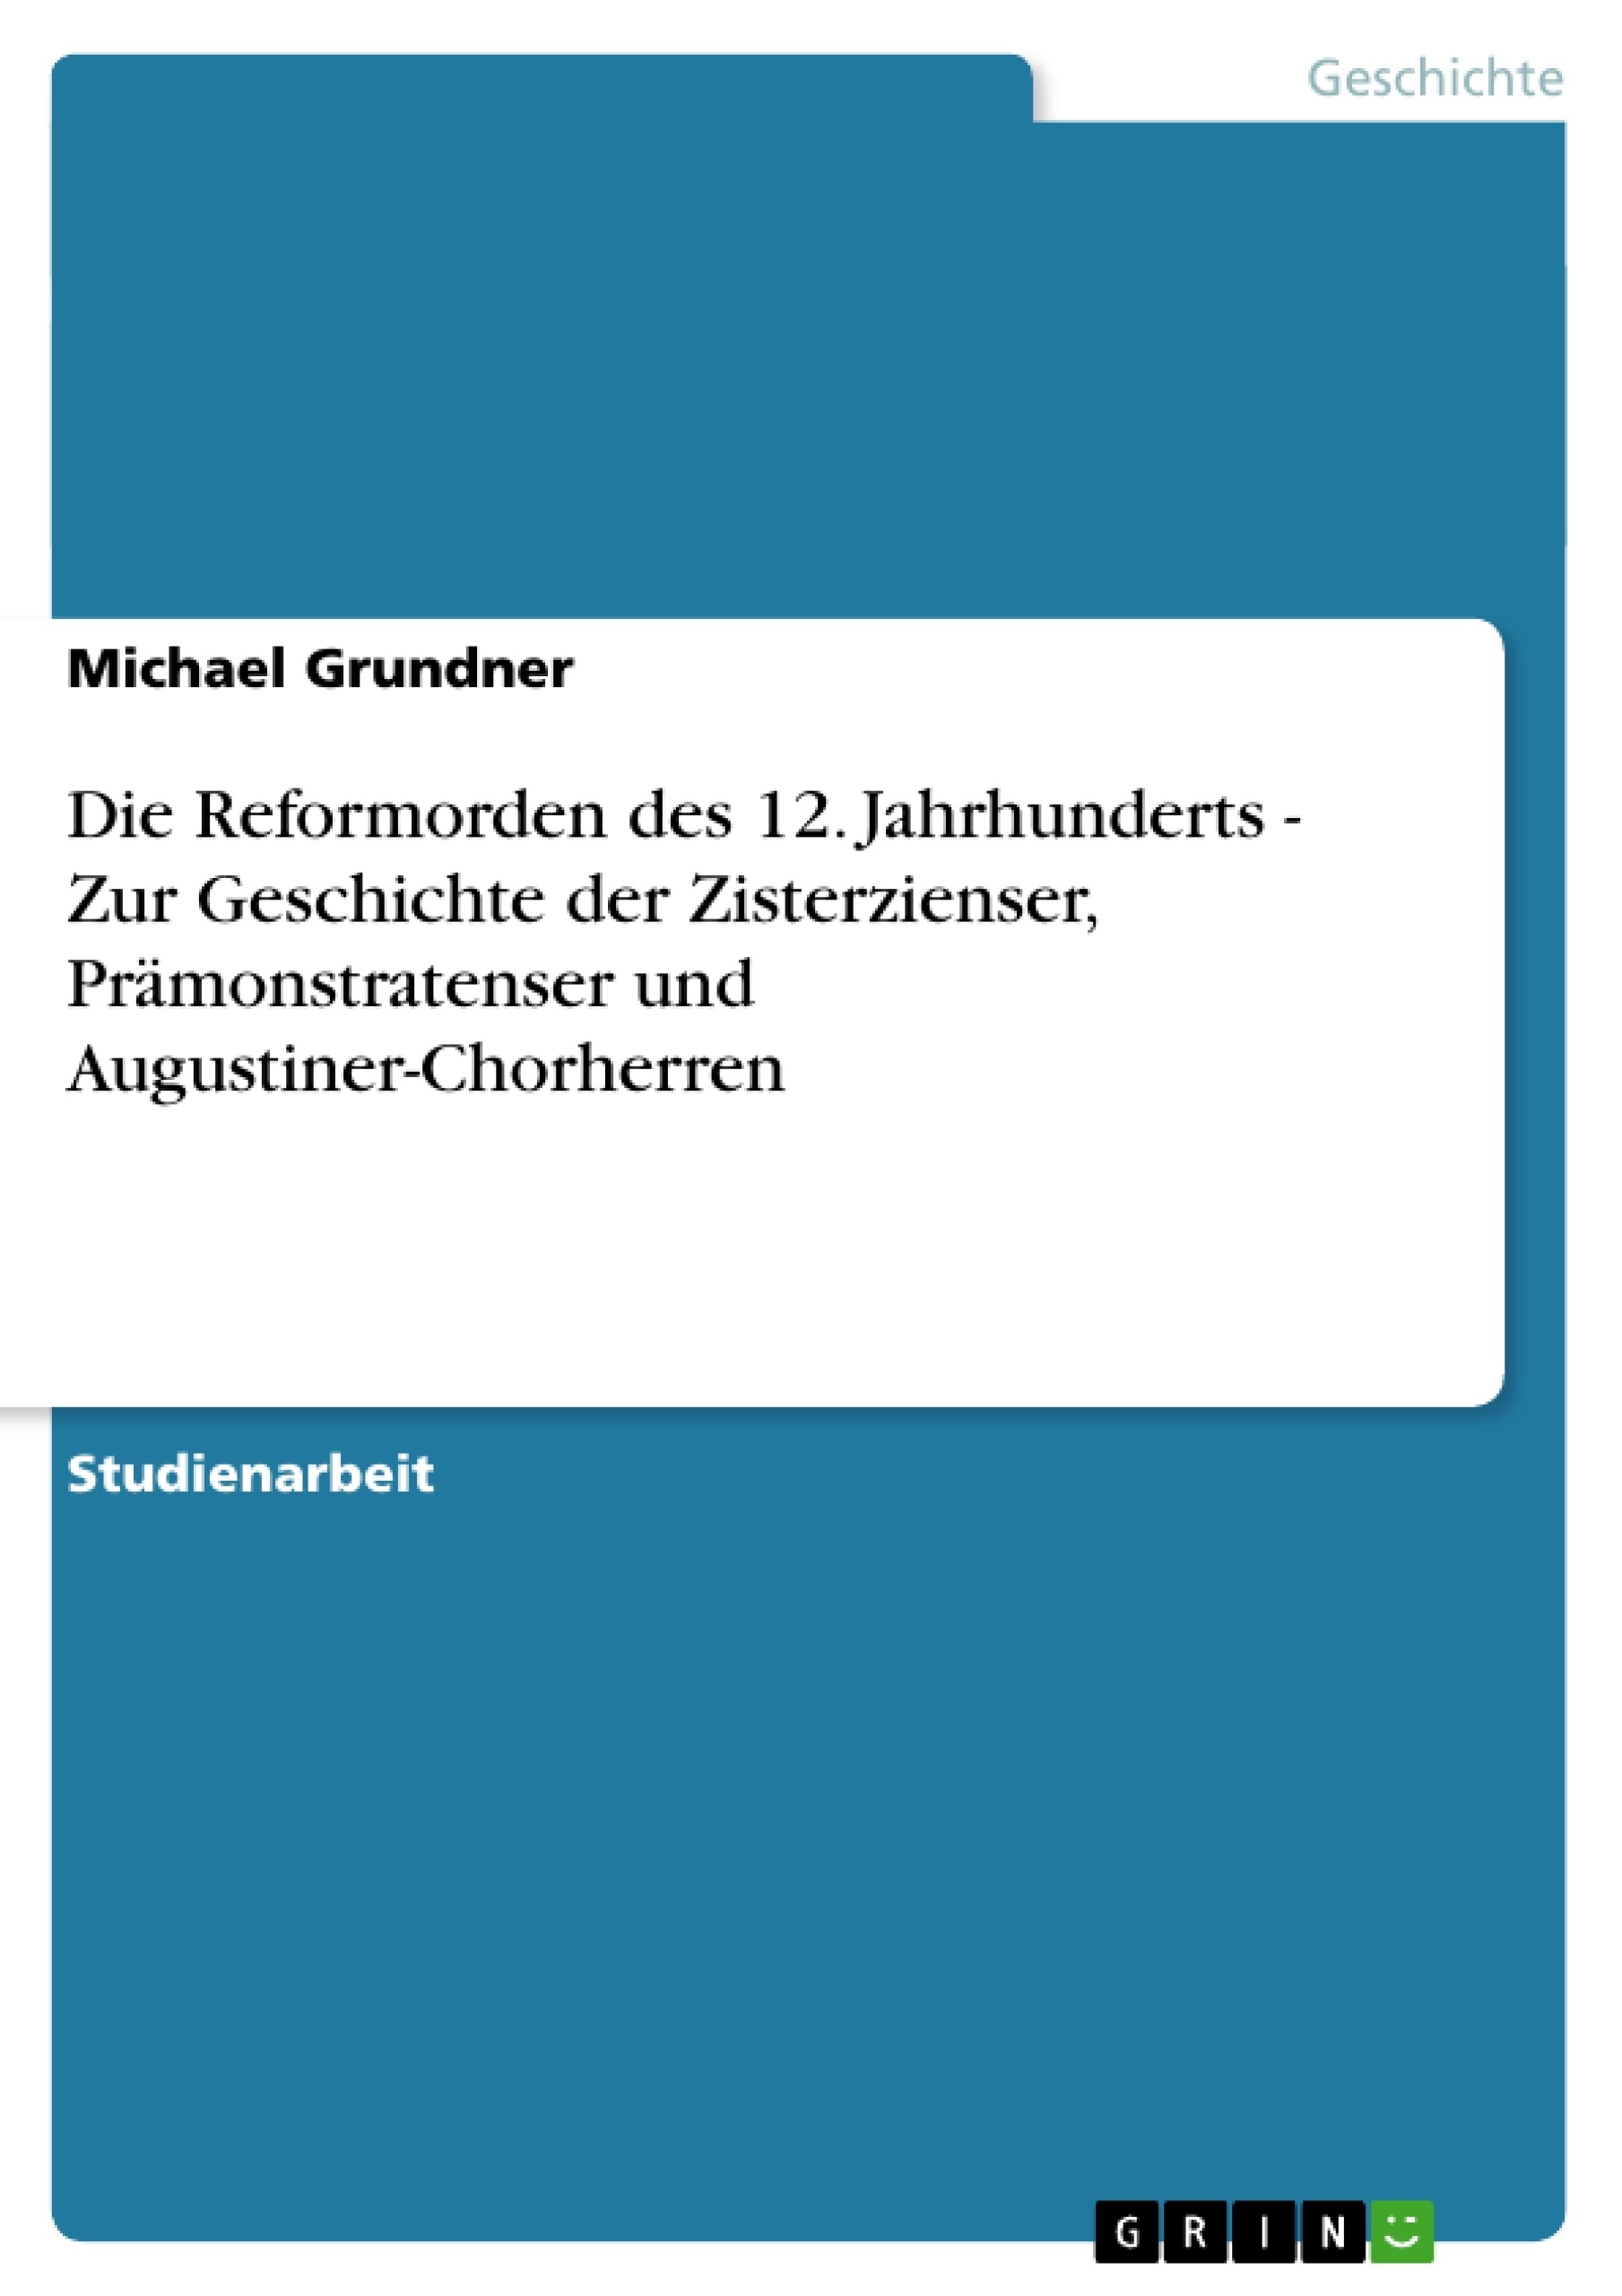 Title: Die Reformorden des 12. Jahrhunderts - Zur Geschichte der Zisterzienser, Prämonstratenser und Augustiner-Chorherren